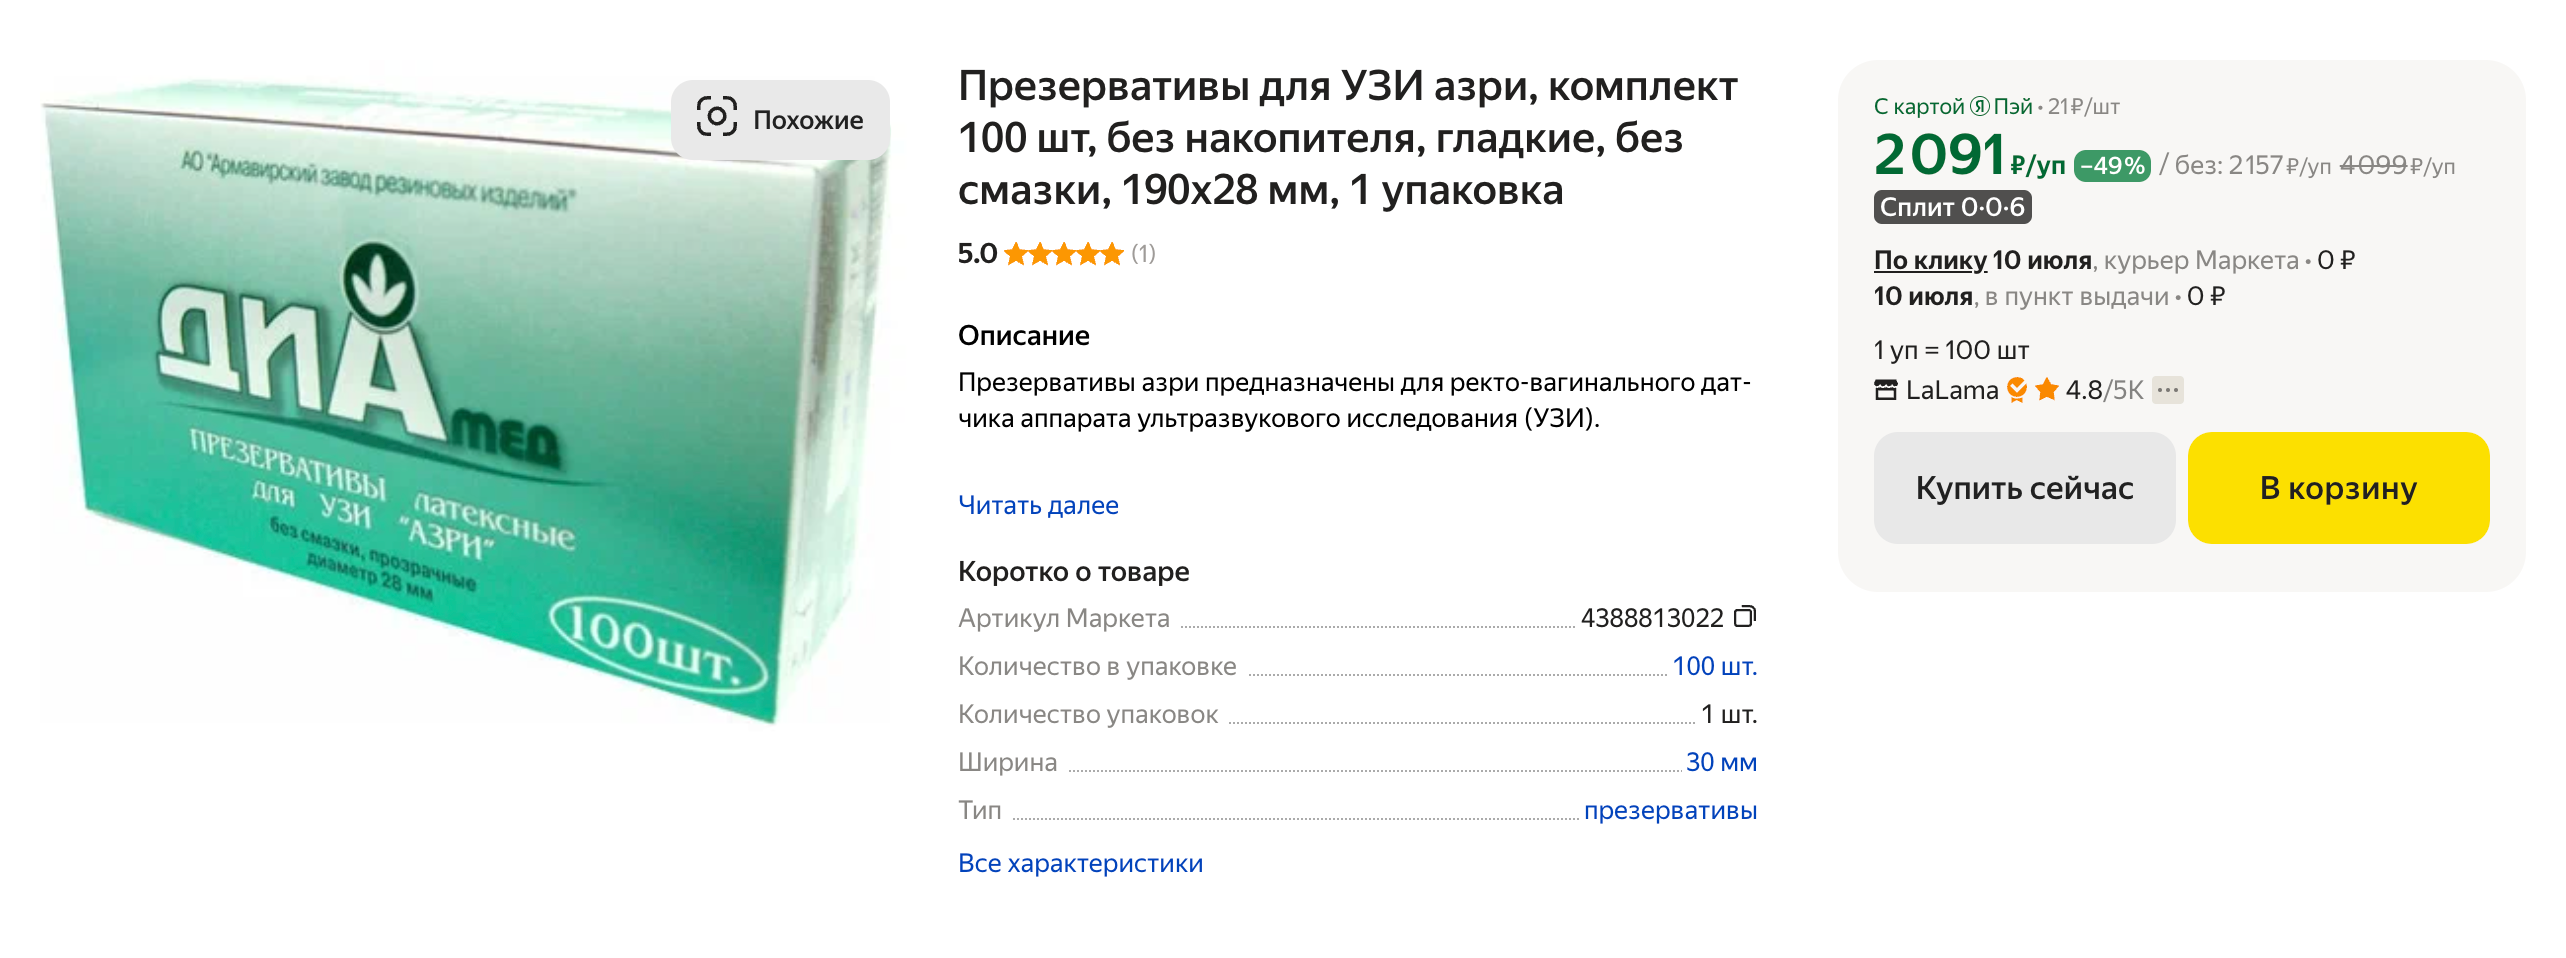 Презервативы для УЗИ хорошо подойдут для вибраторов, потому что на них нет силиконовой смазки. Источник: market.yandex.ru